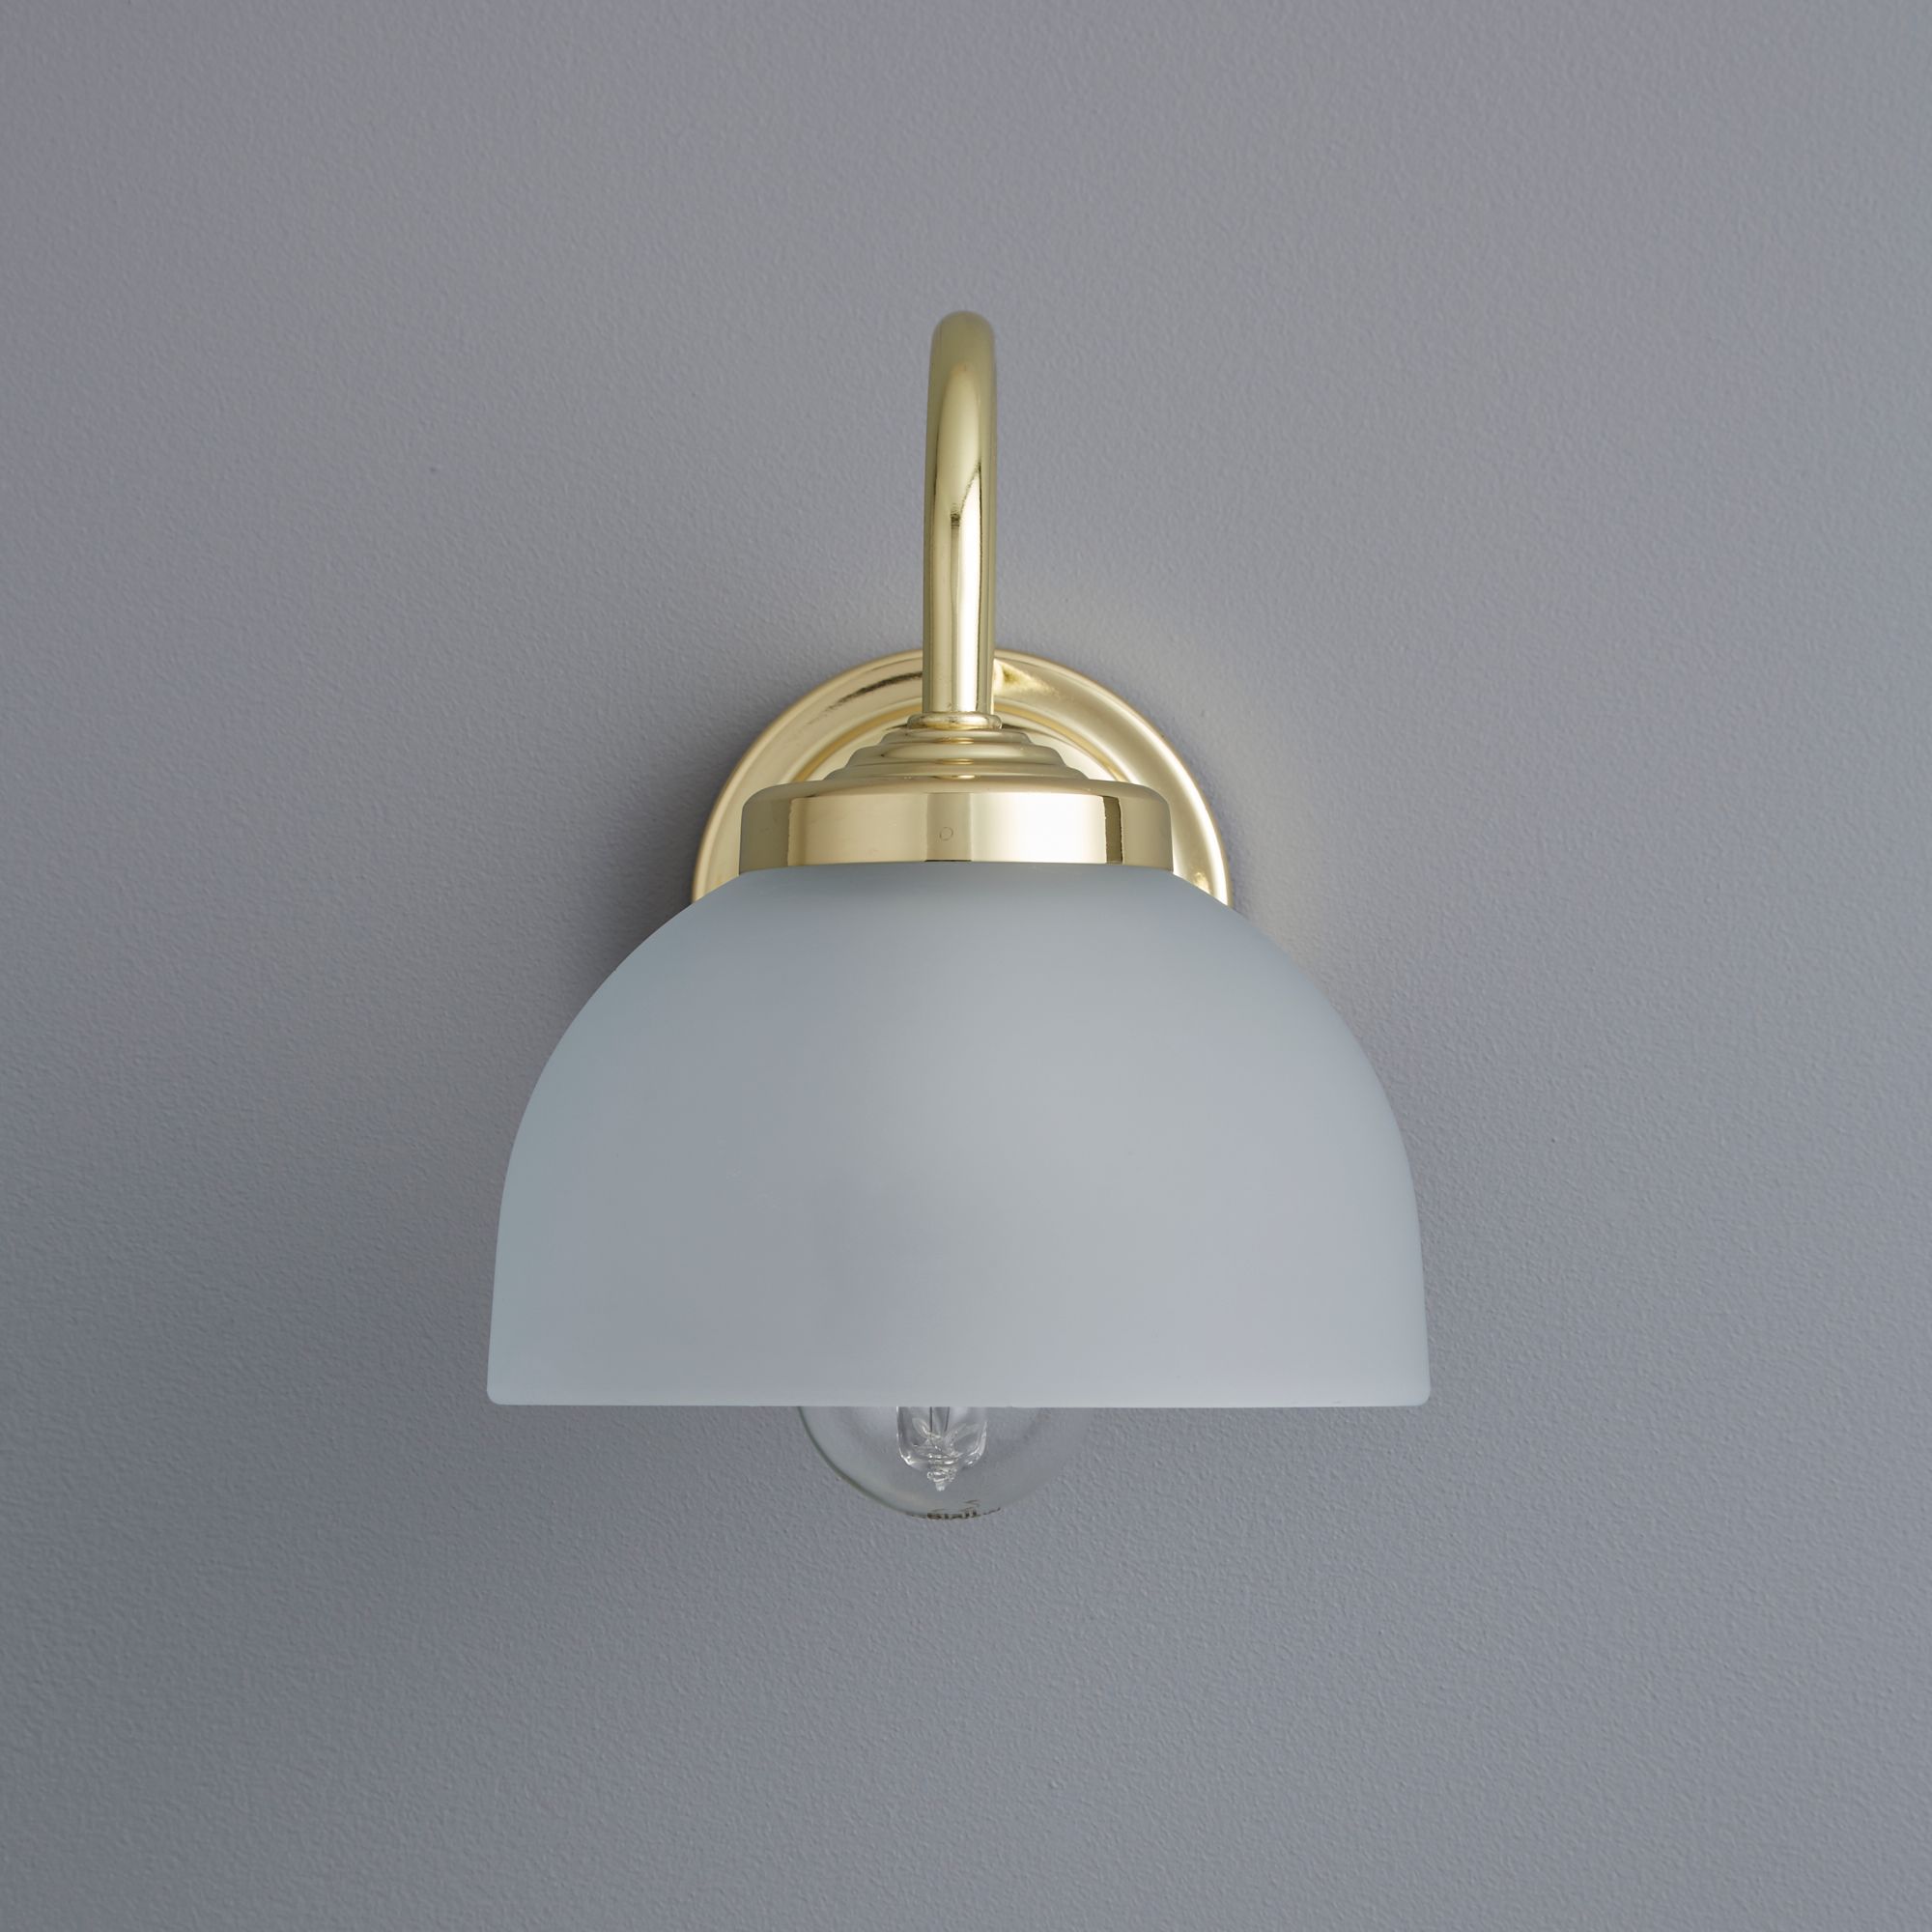 Grantchester Brass effect Wall light